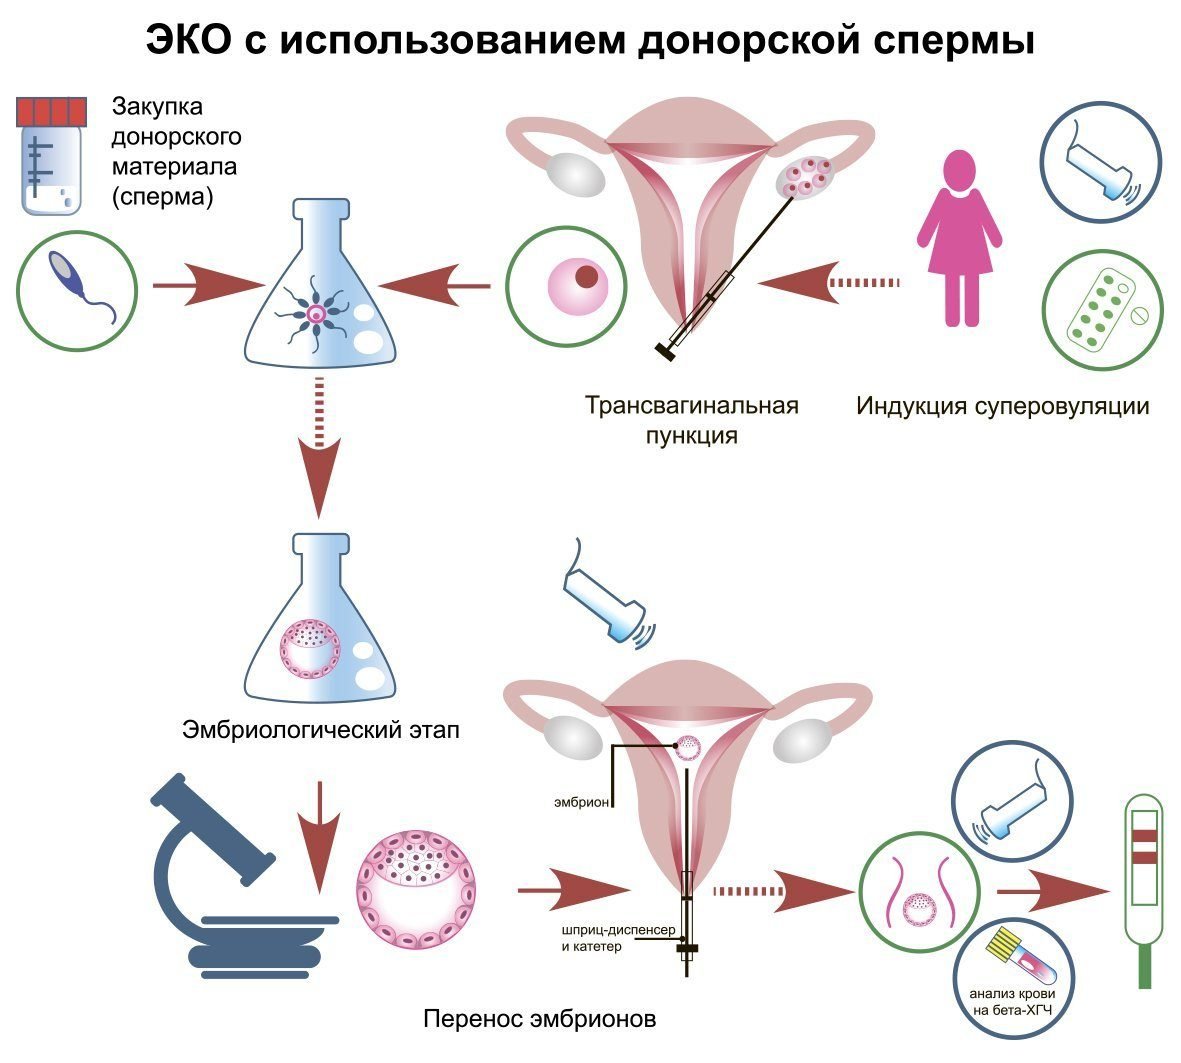 сперма и ее влияние на организм фото 62